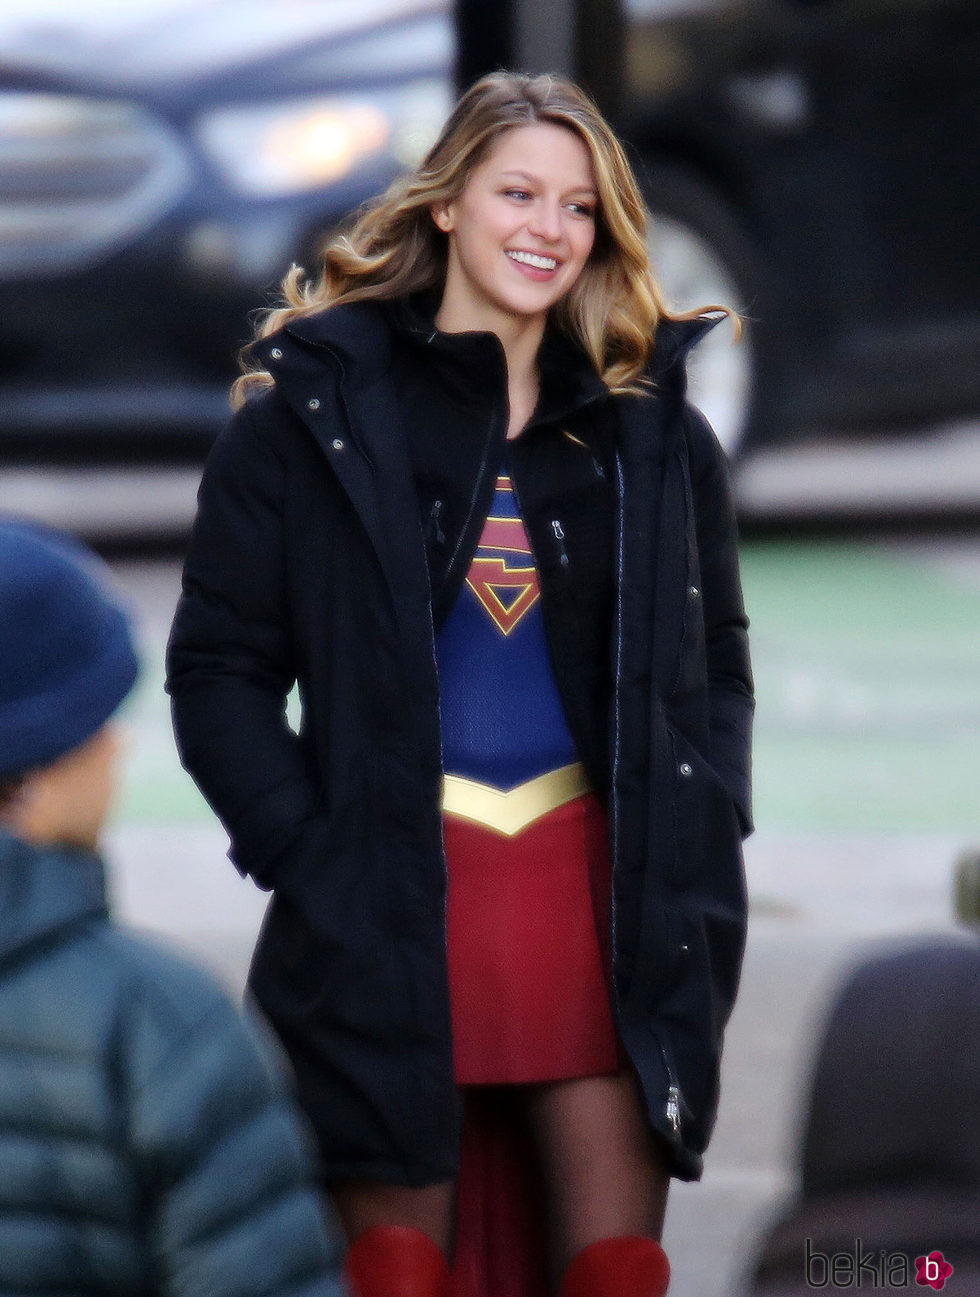 Melissa Benoist feliz en el rodaje de 'Supergirl'